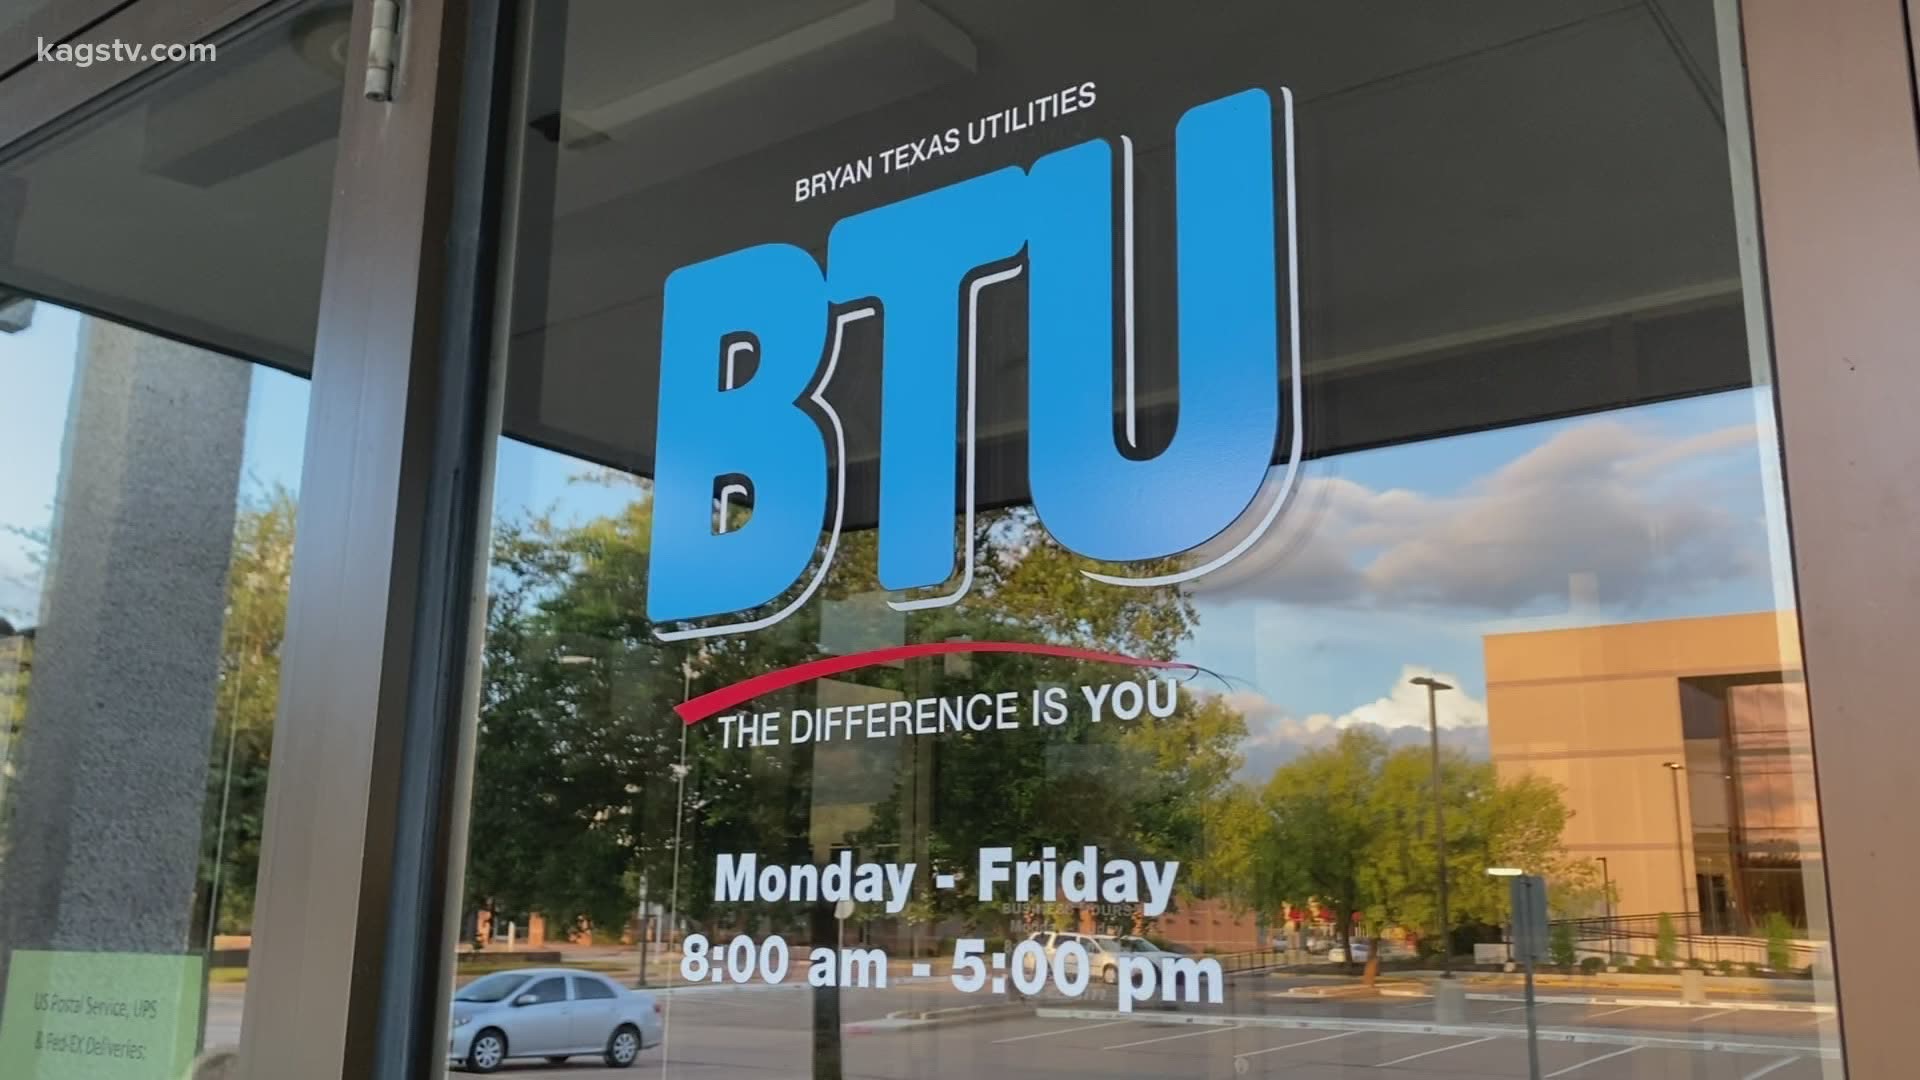 BTU responds to protesters' demands